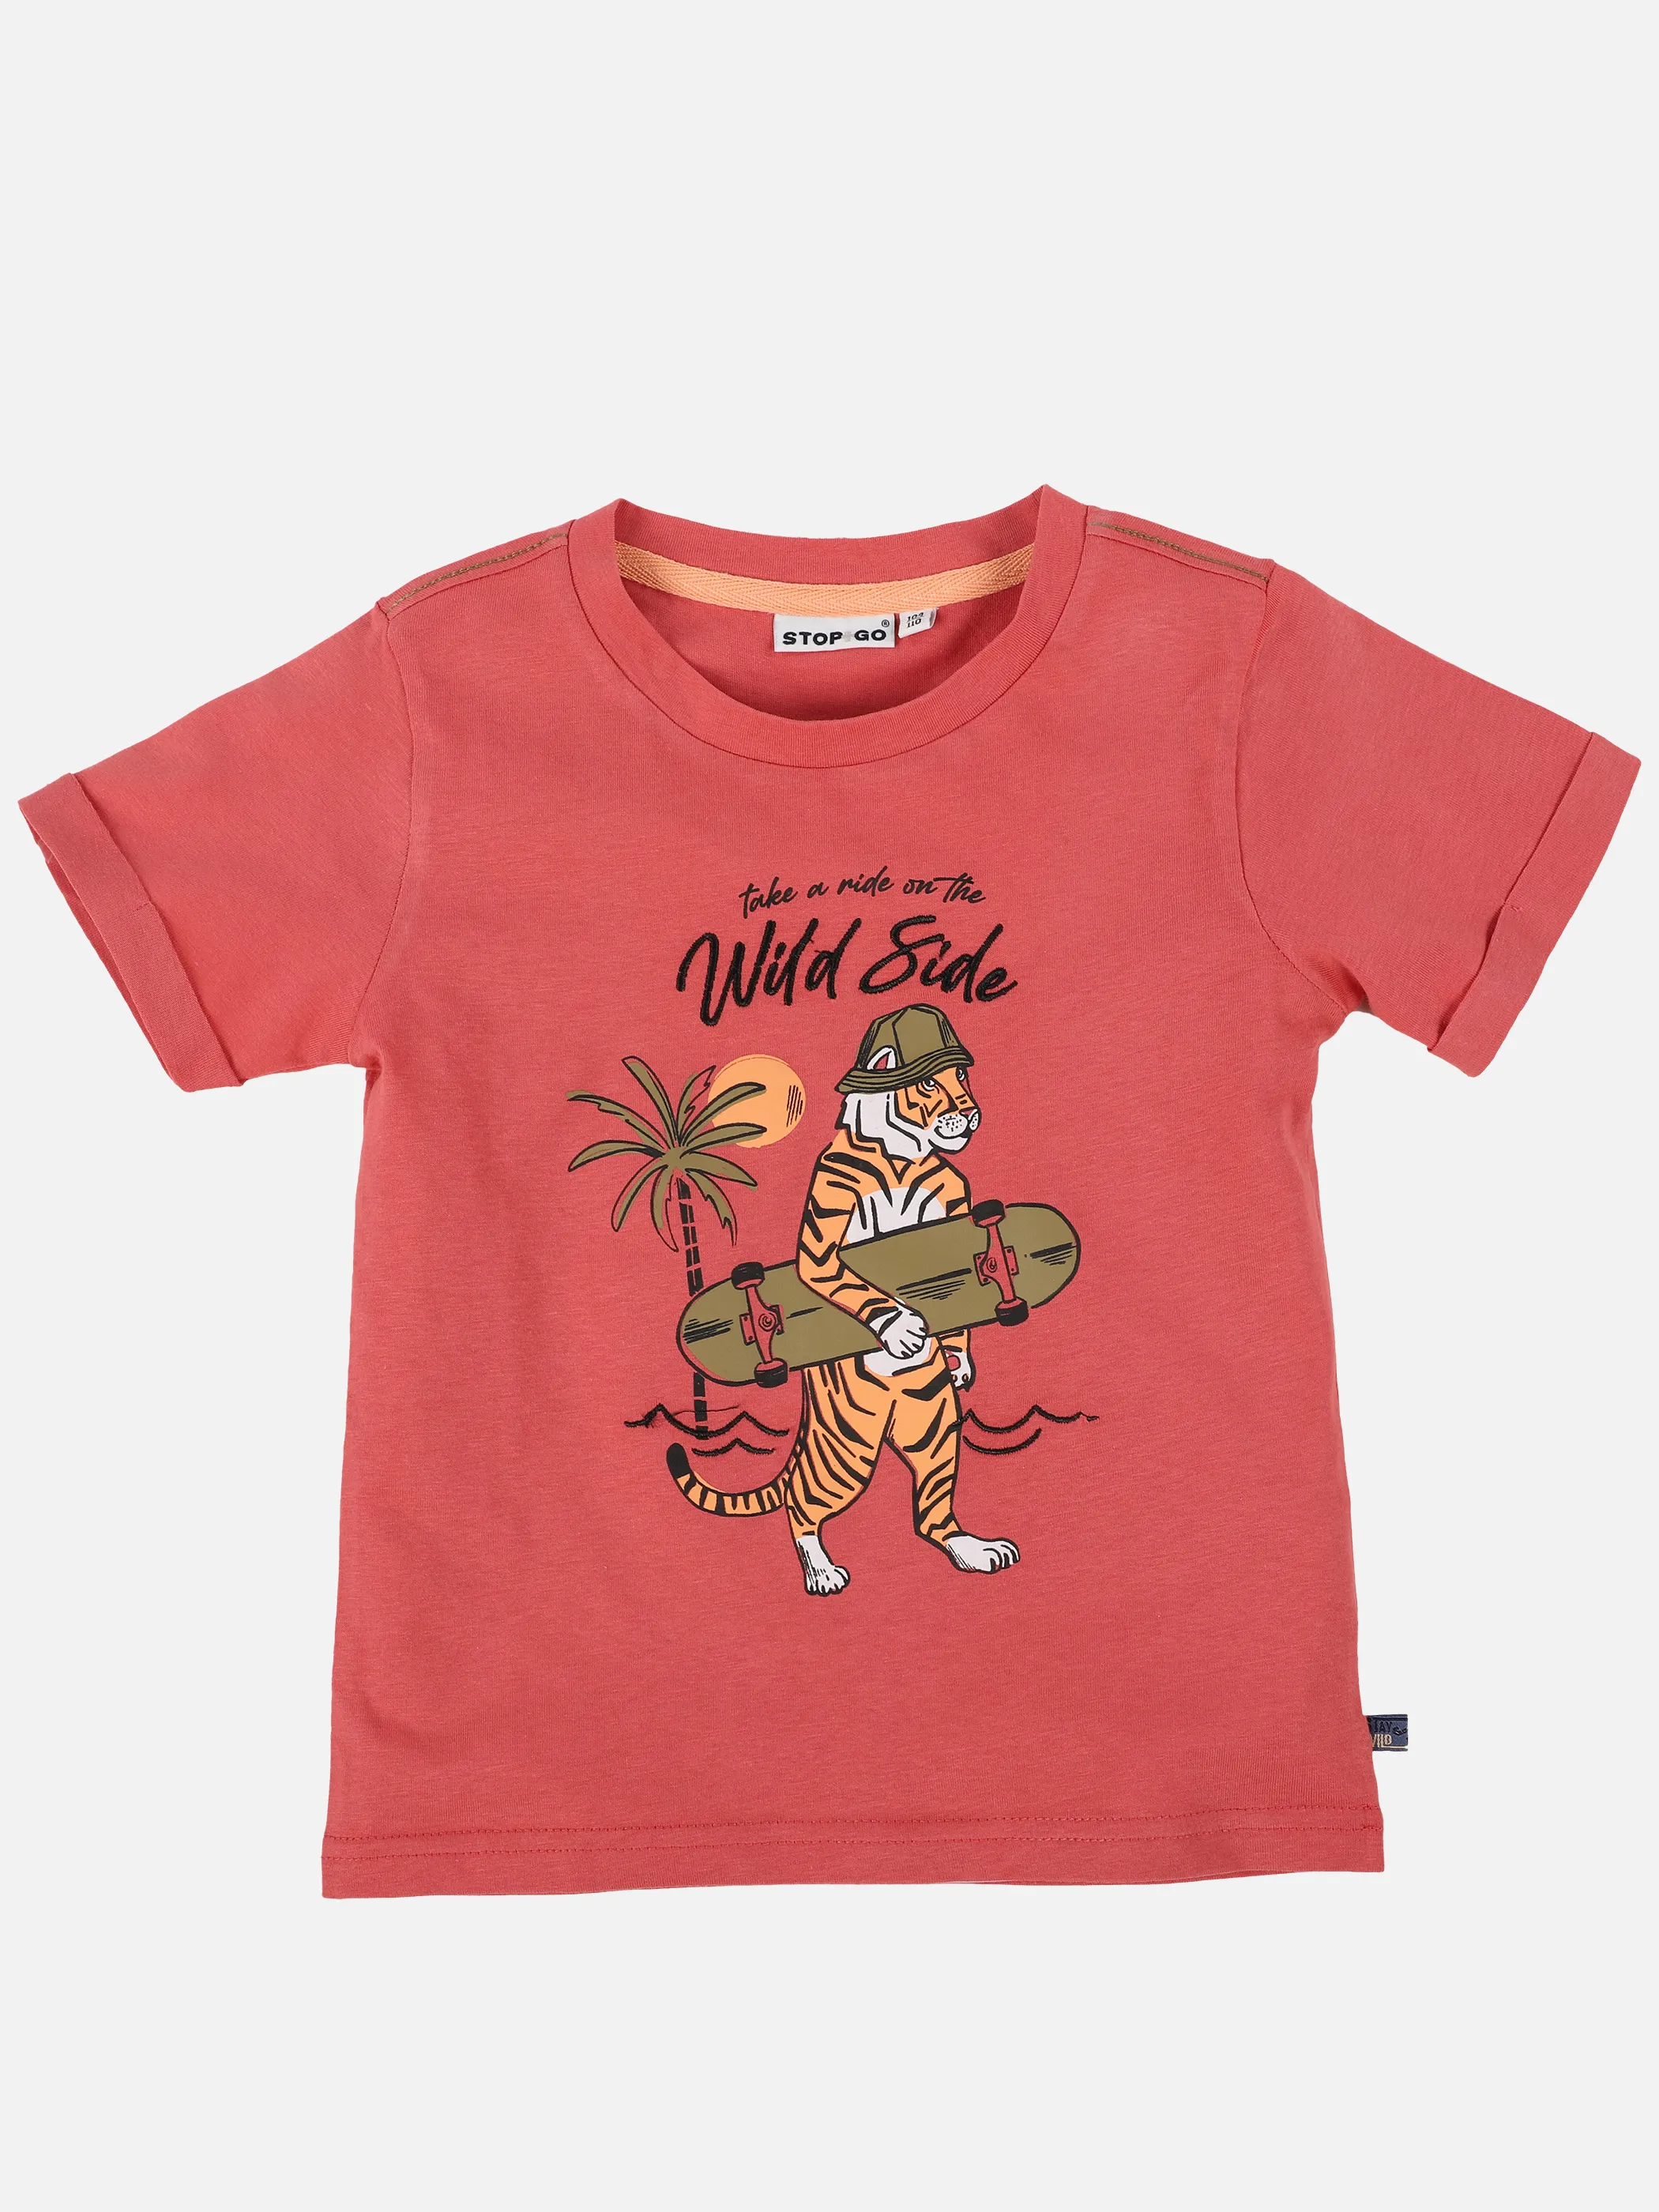 Stop + Go KJ T-Shirt mit Skater Frontdruck in rot Rot 891517 ROT 1